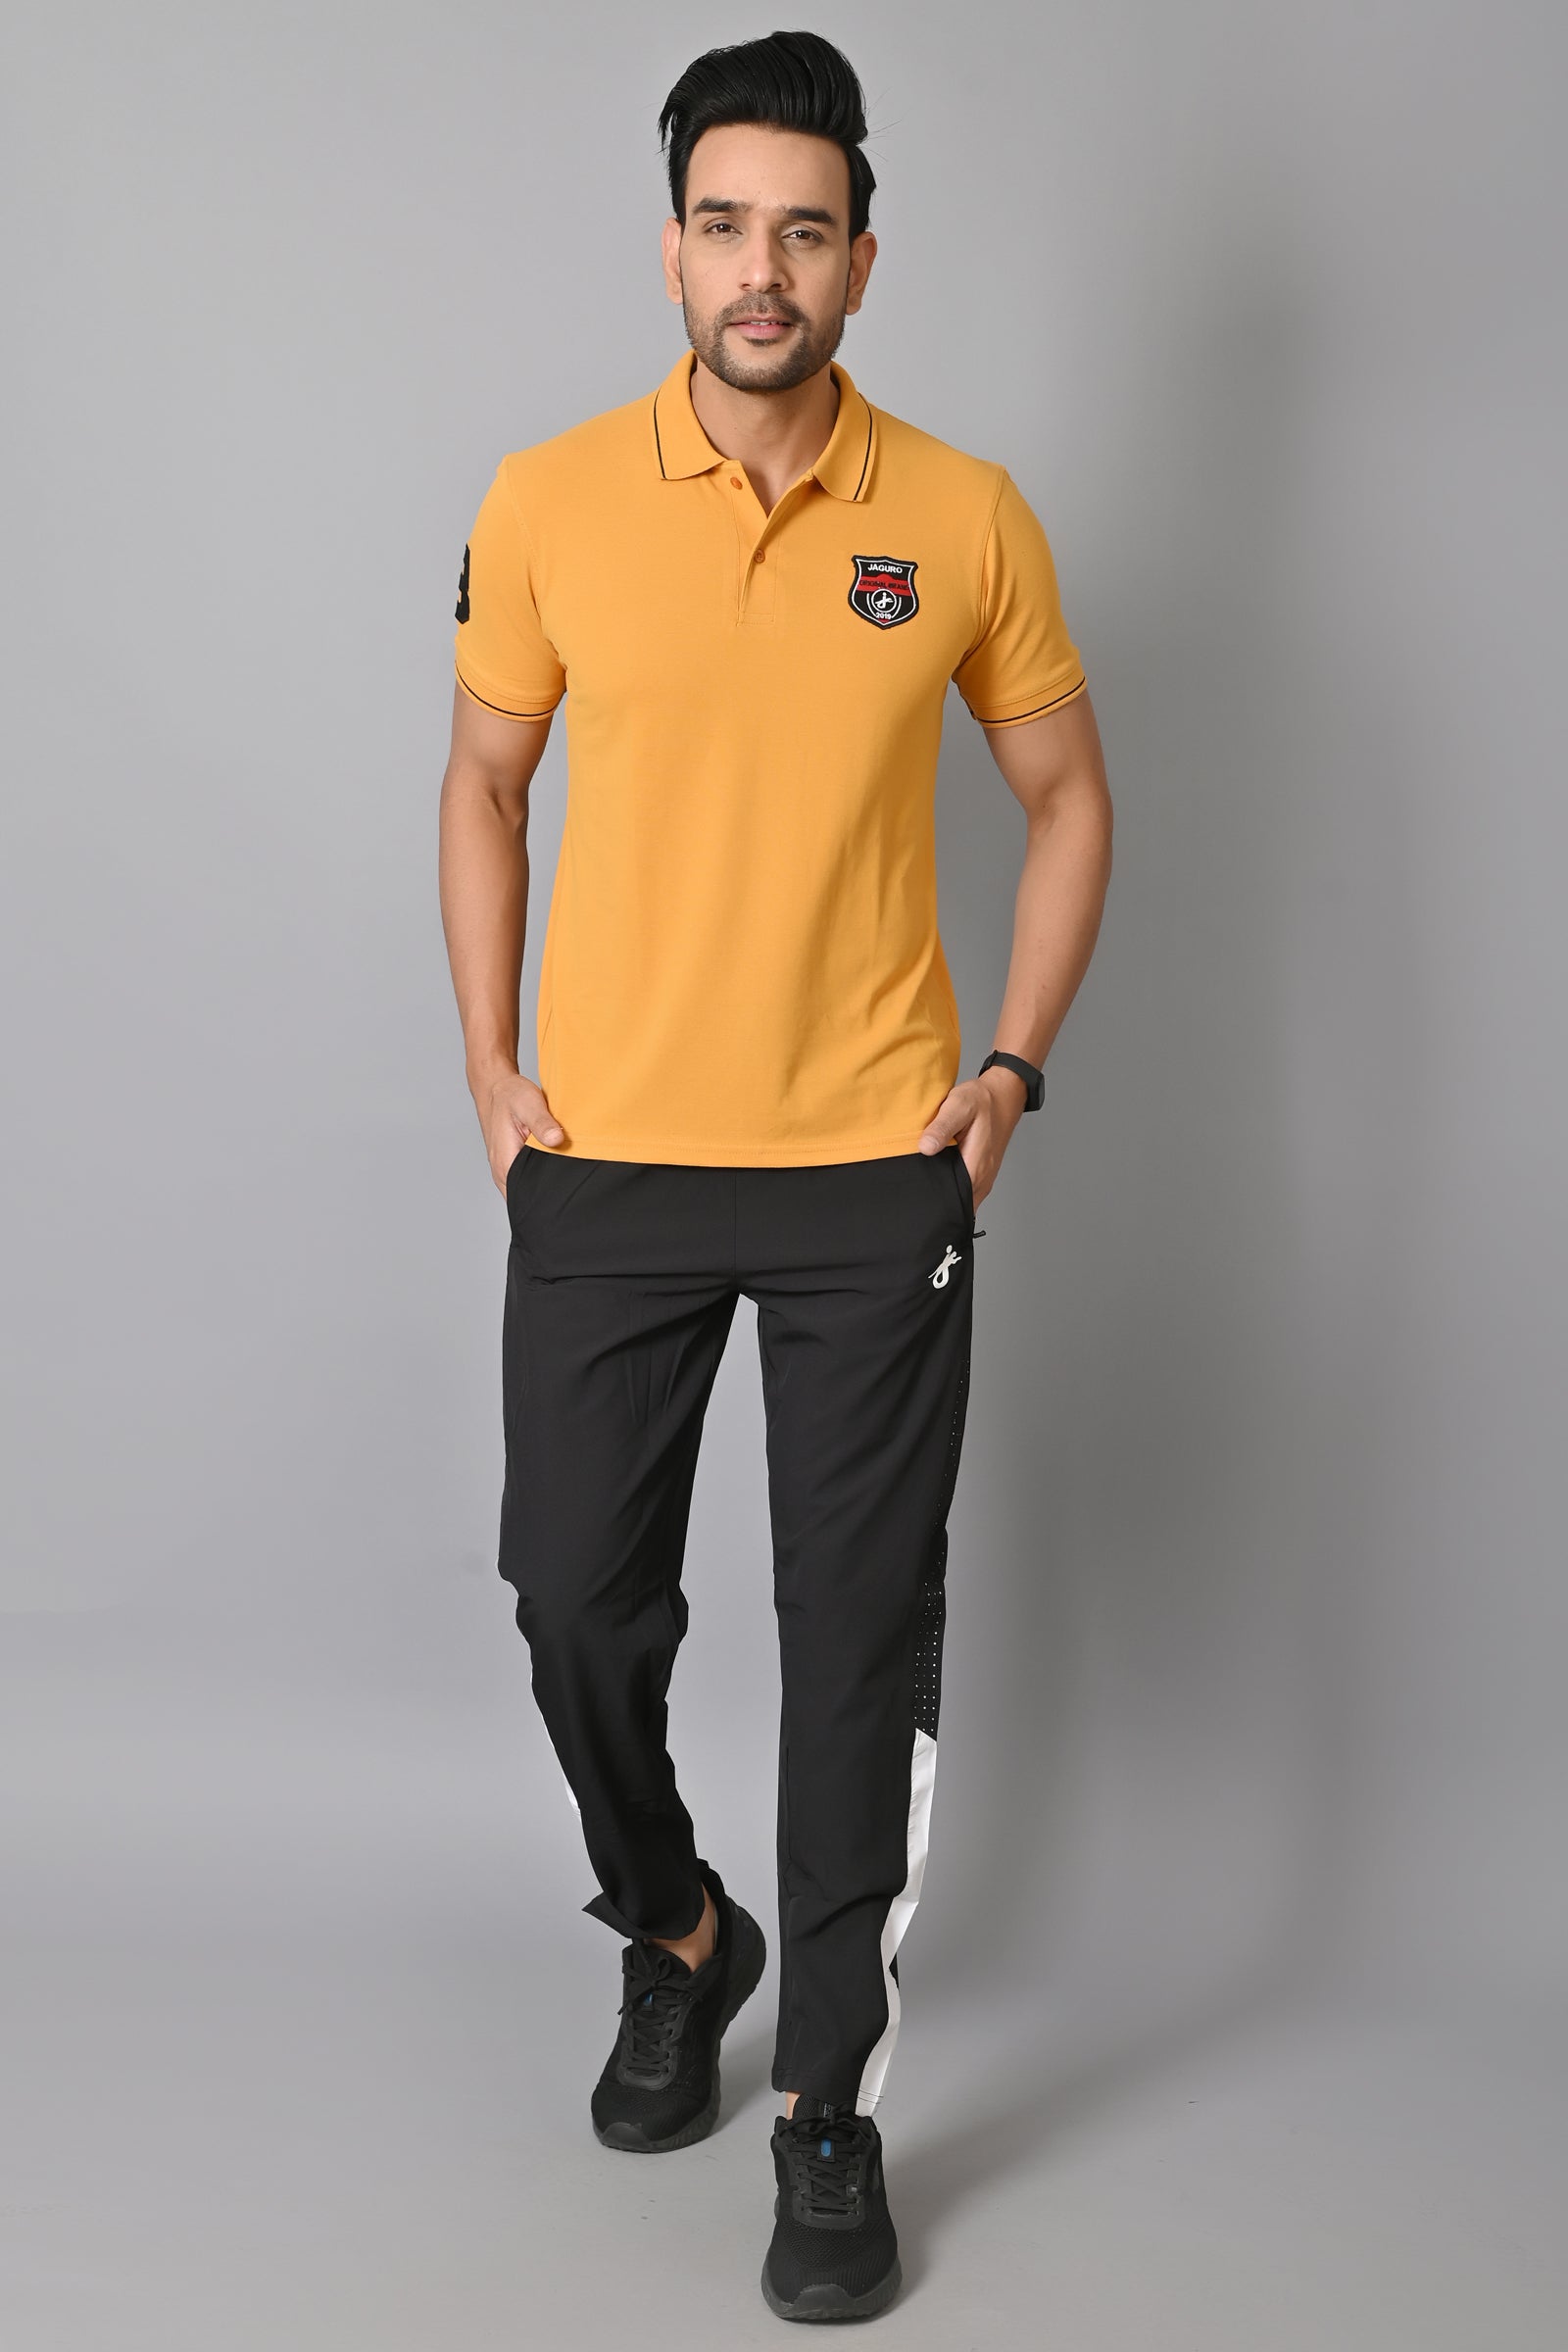 Jaguro Men's Polo Tshirt Mustard